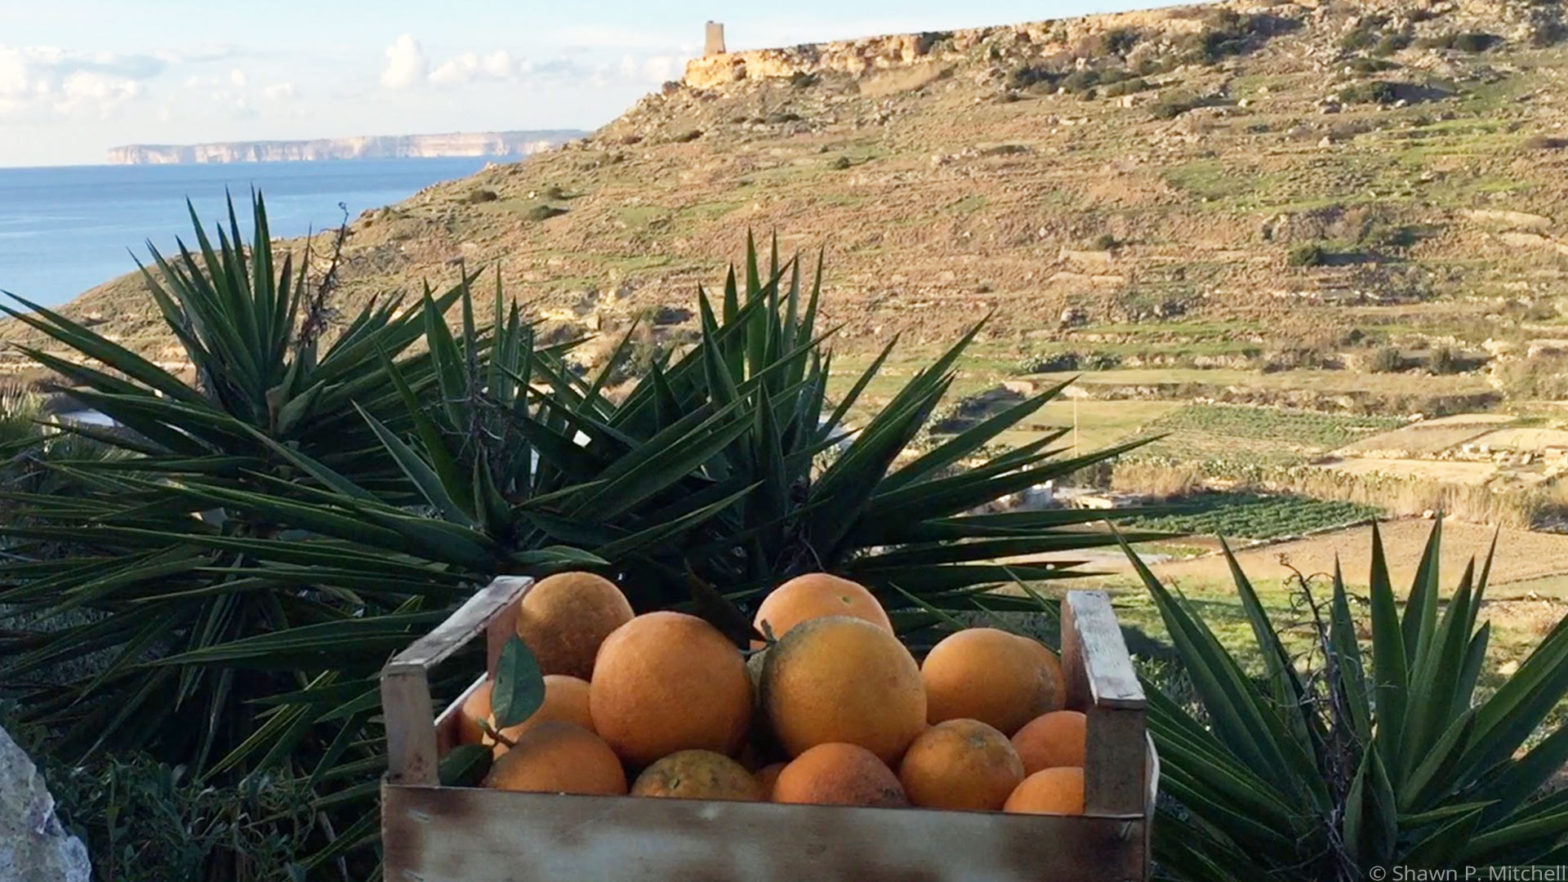 Harvesting Oranges on The Island of Malta